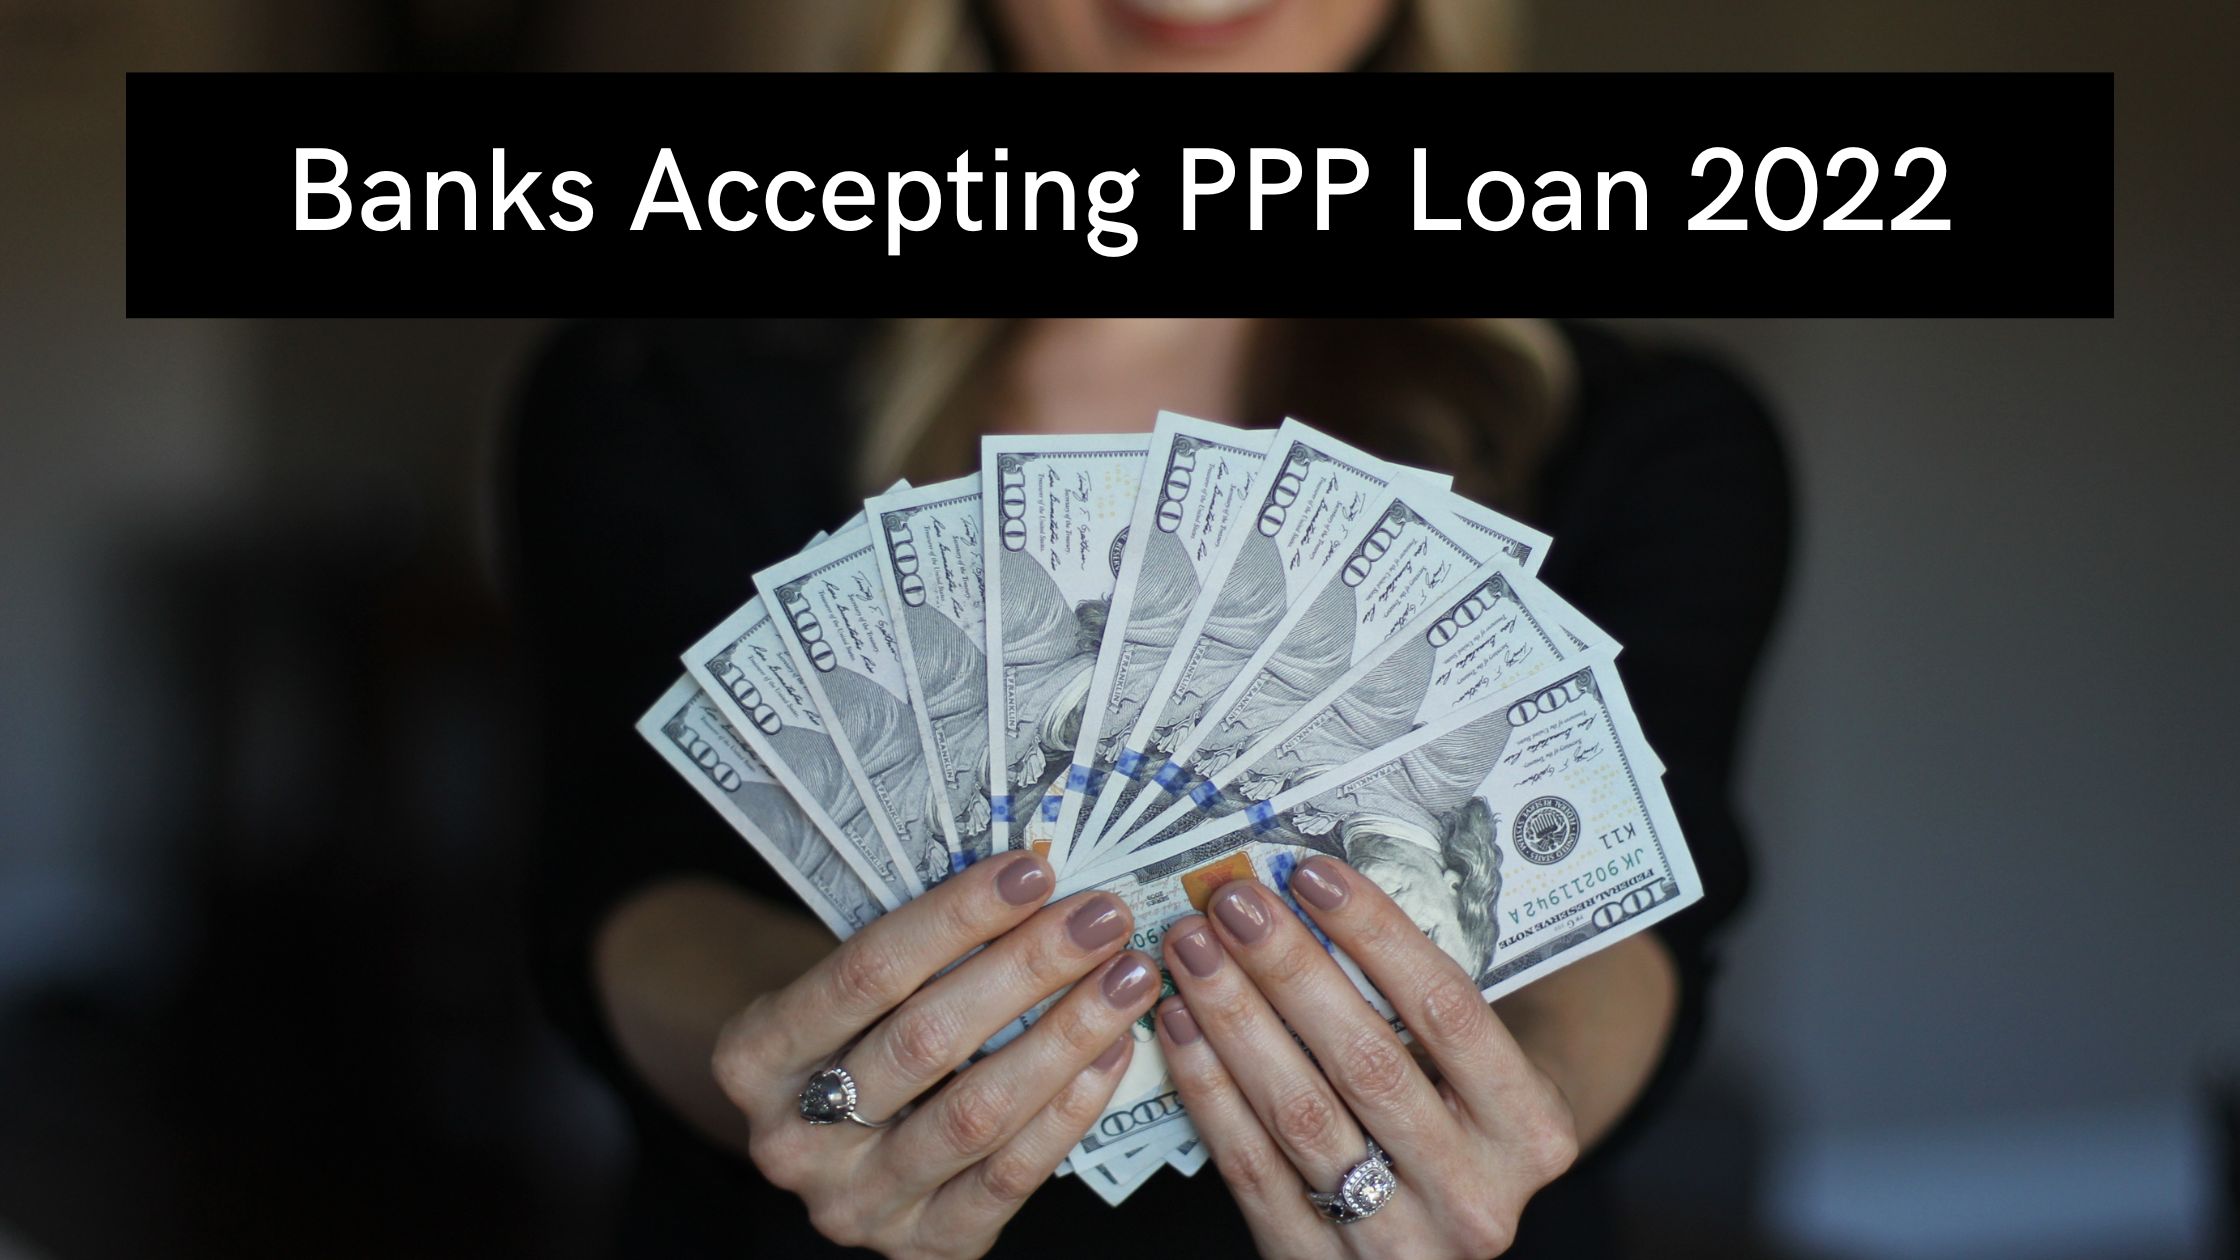 PPP Loan 2022